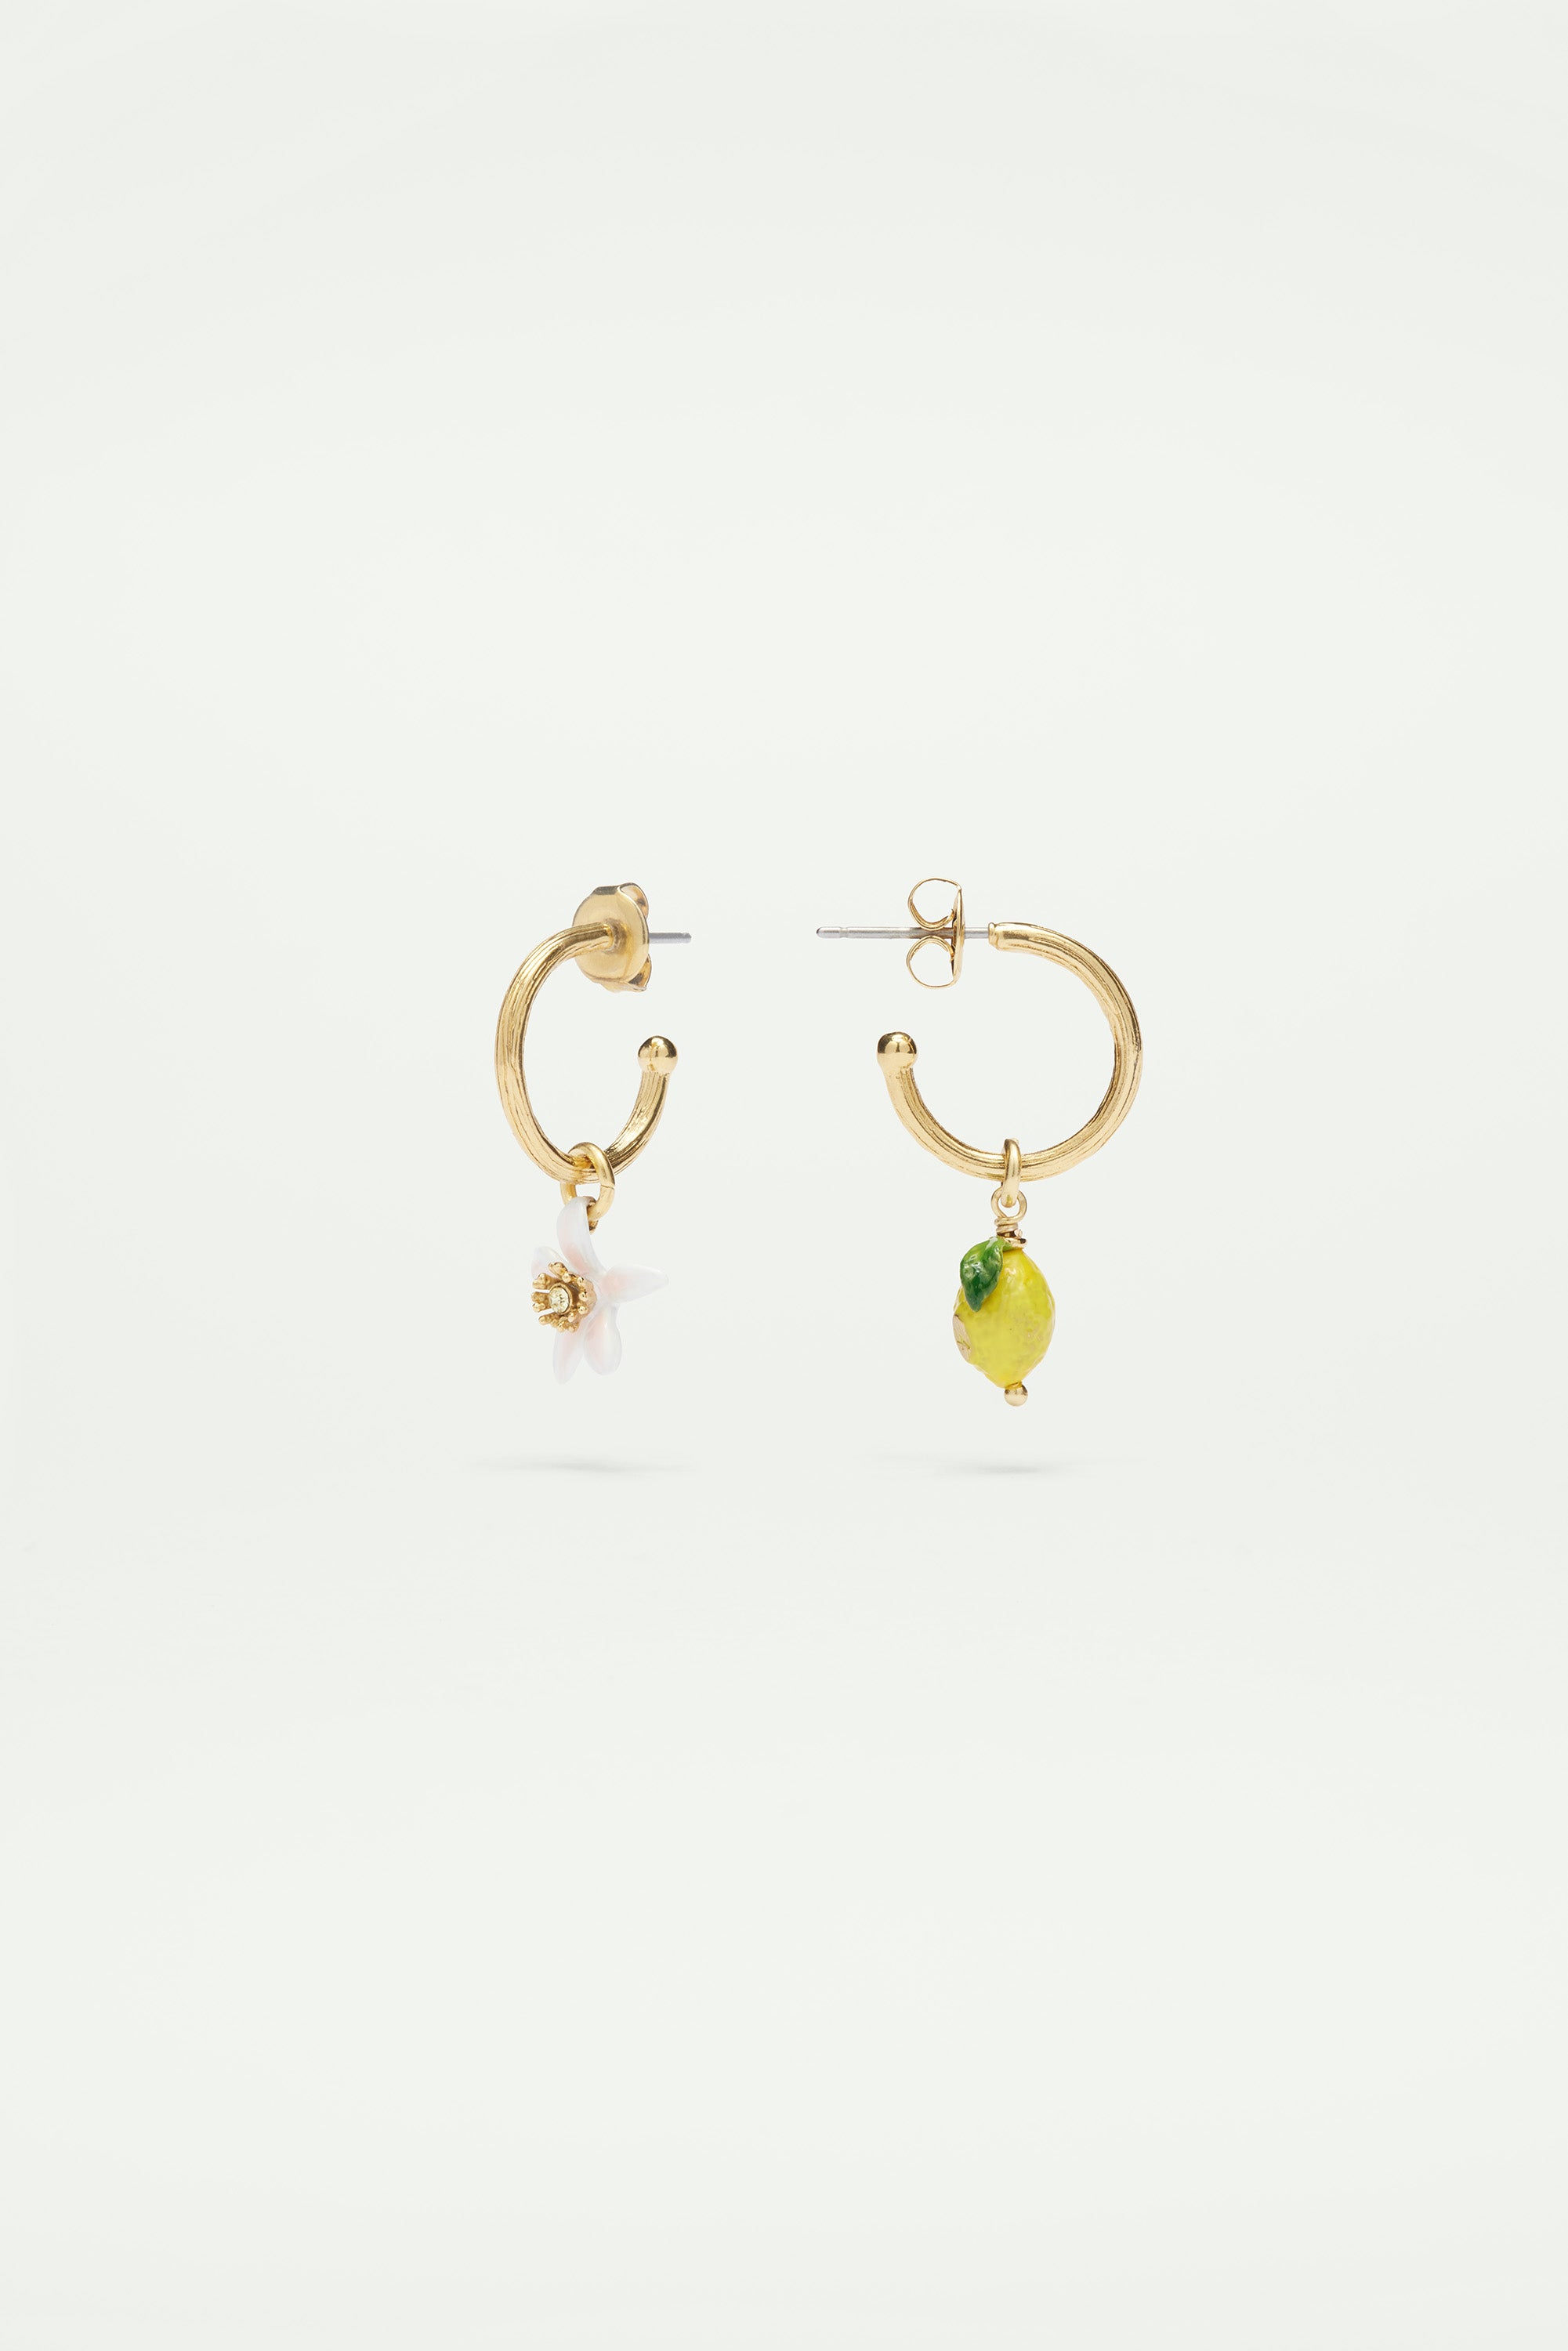 Lemon and lemon white blossom post hoop earrings